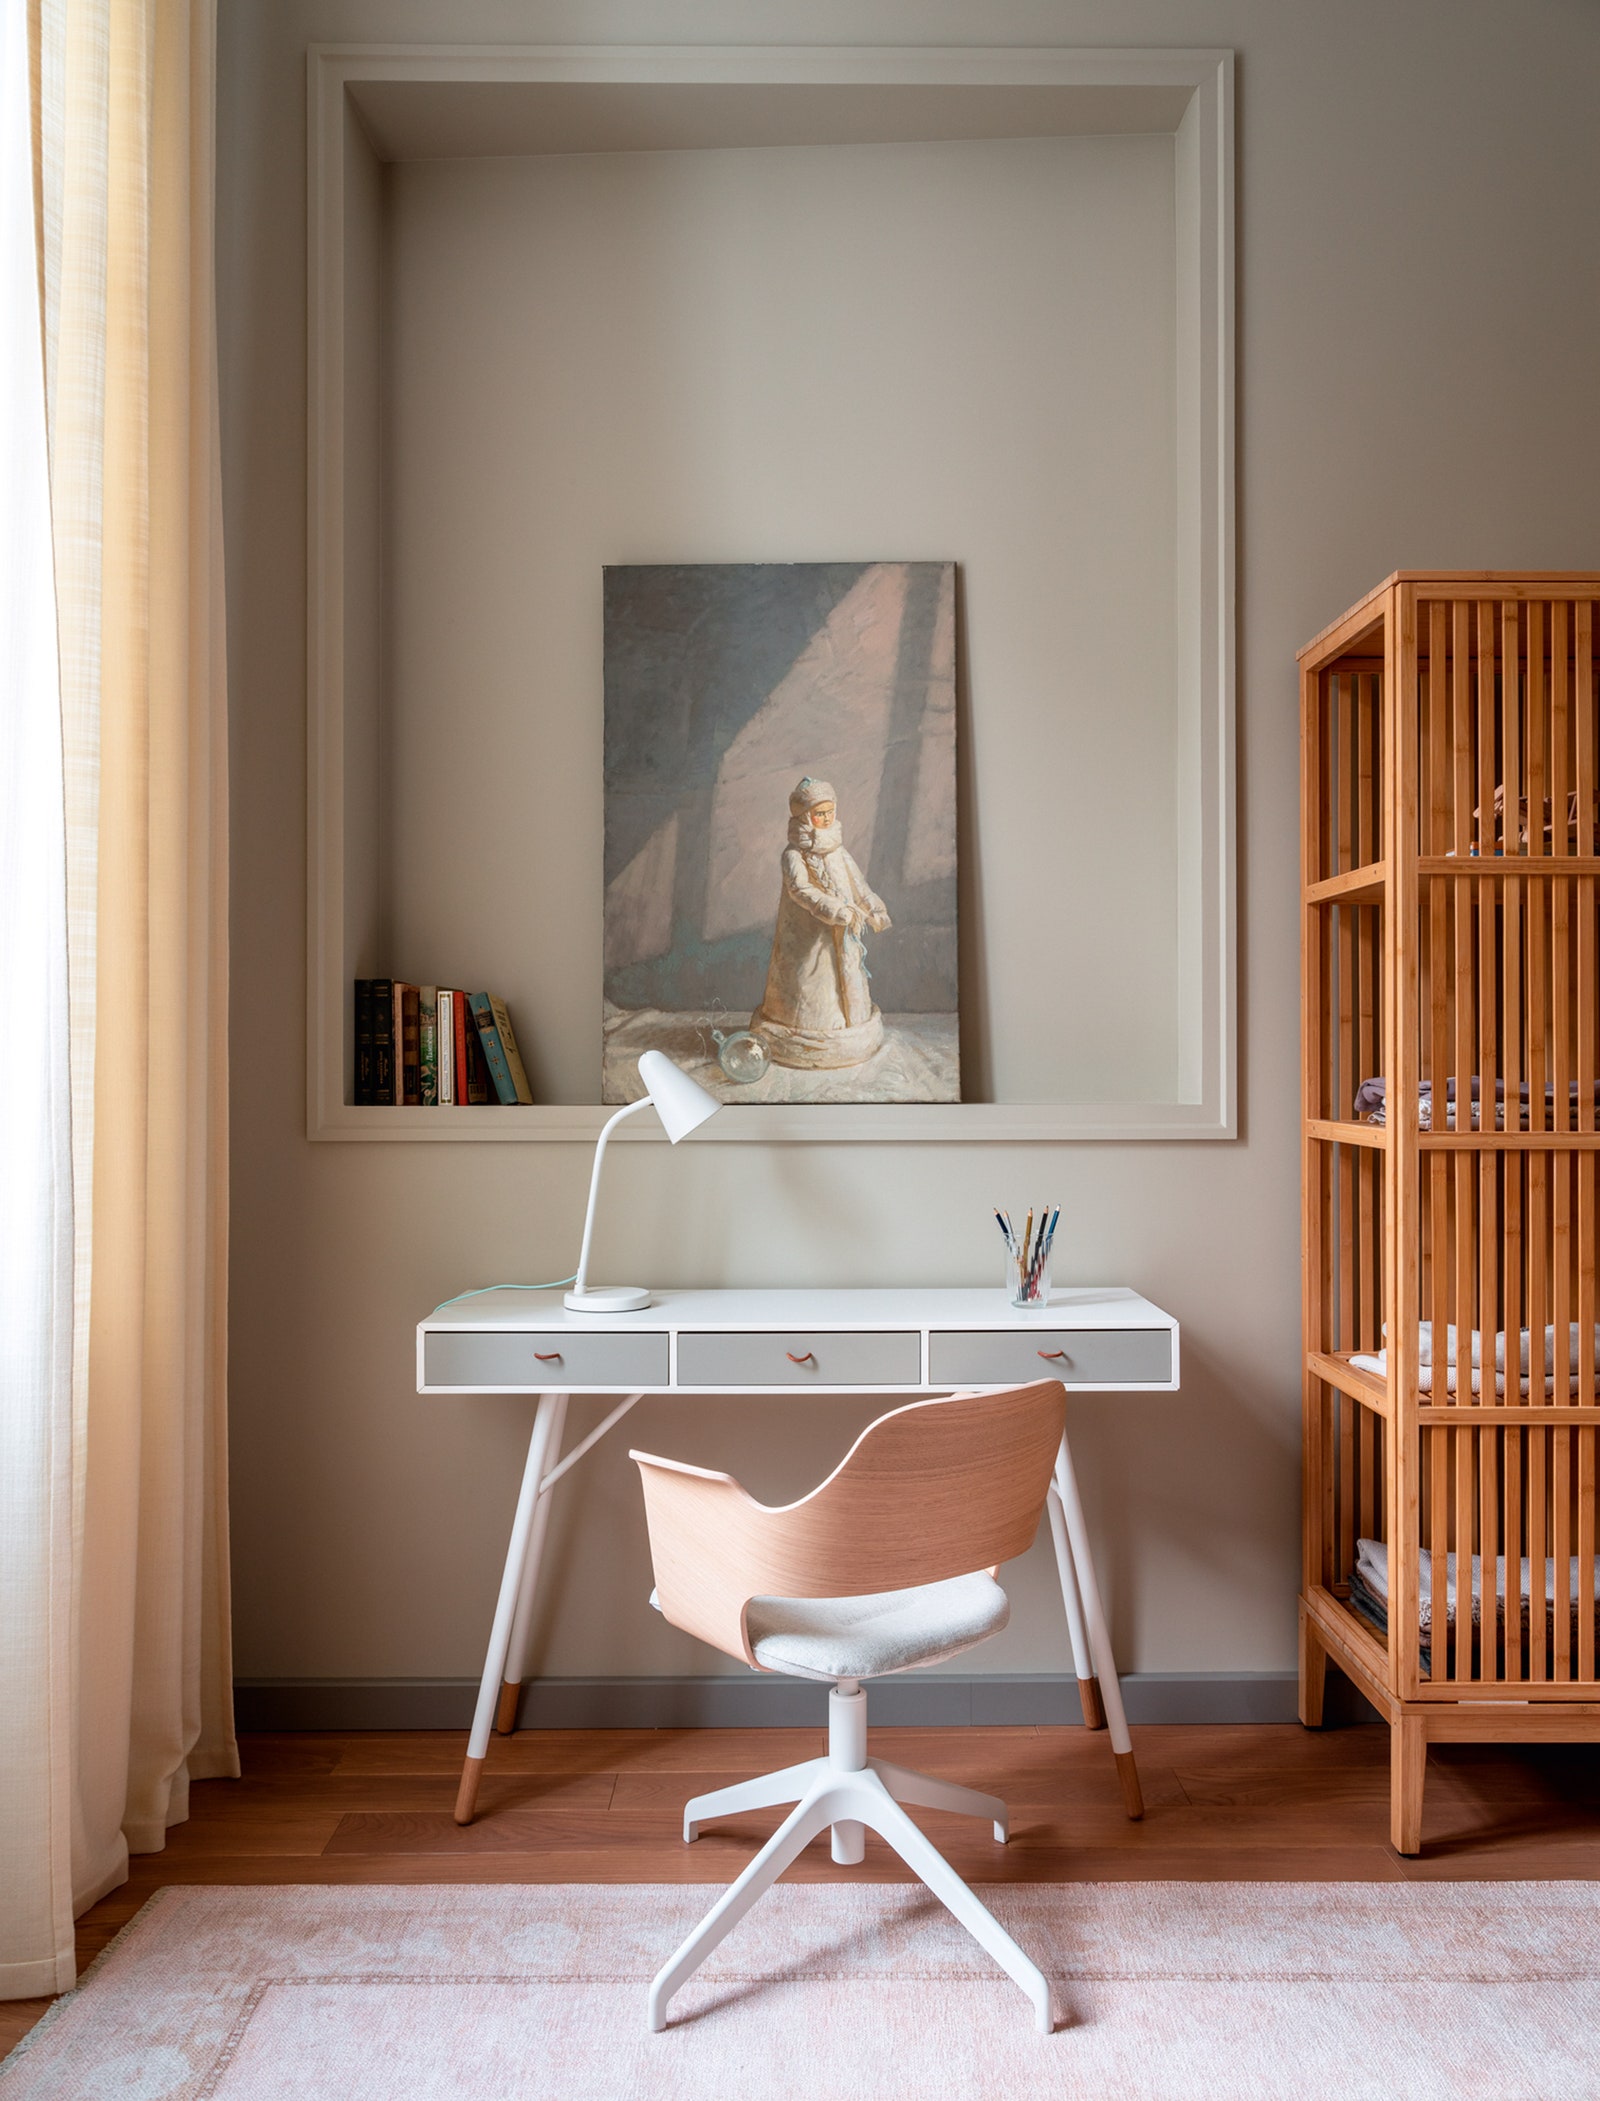 Детская. Рабочий стол BoConcept стул и стеллаж IKEA ковер Zara Home картина Людмилы Блок “Снегурочка”.